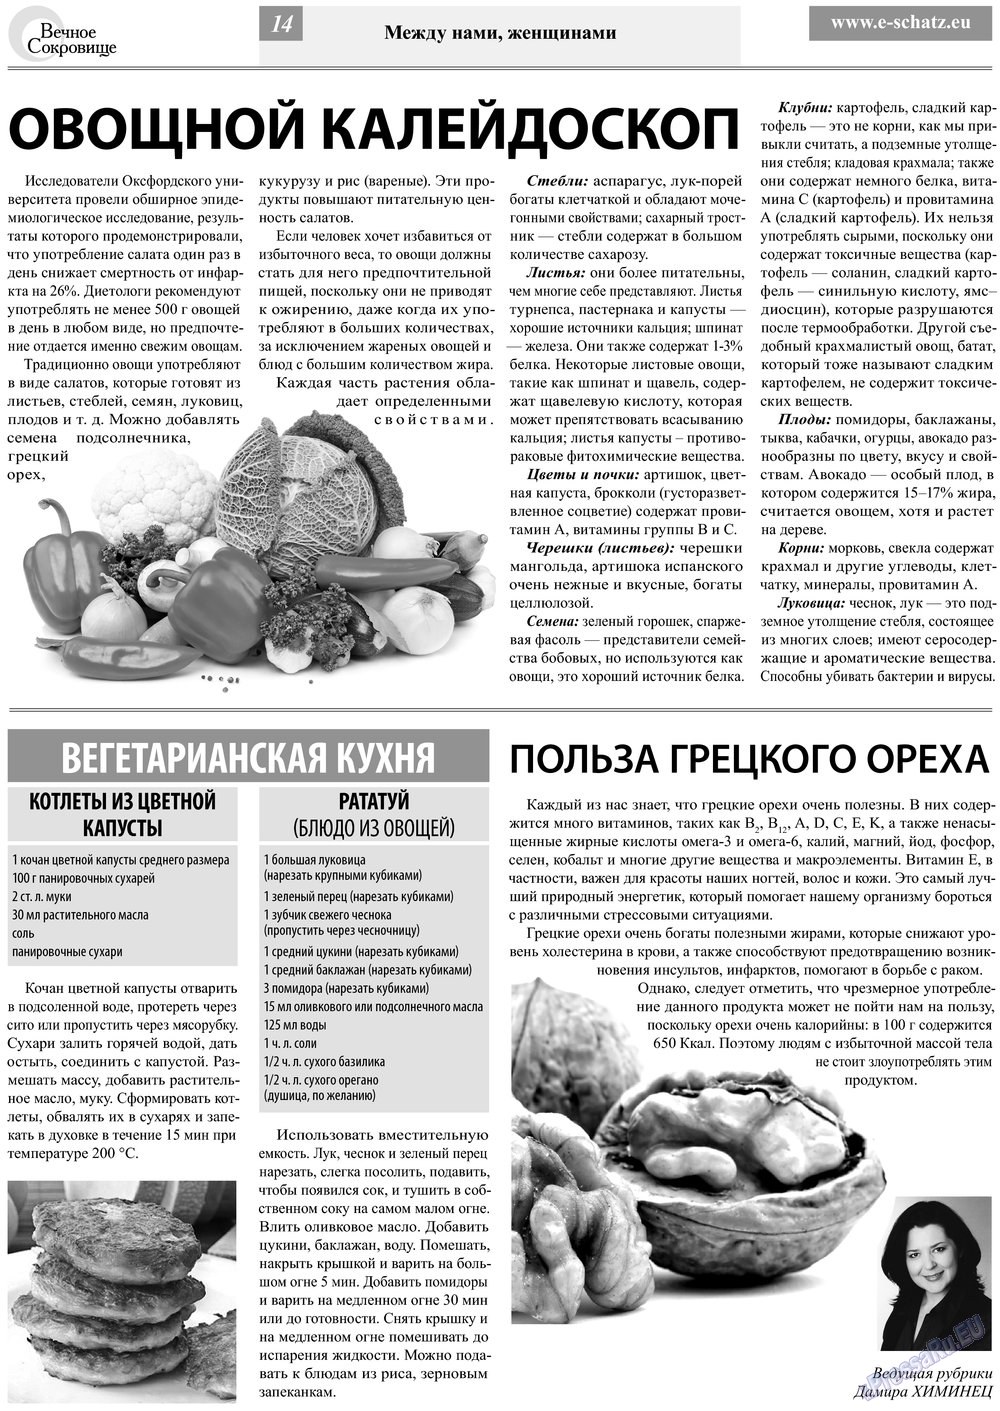 Вечное сокровище (газета). 2013 год, номер 3, стр. 14